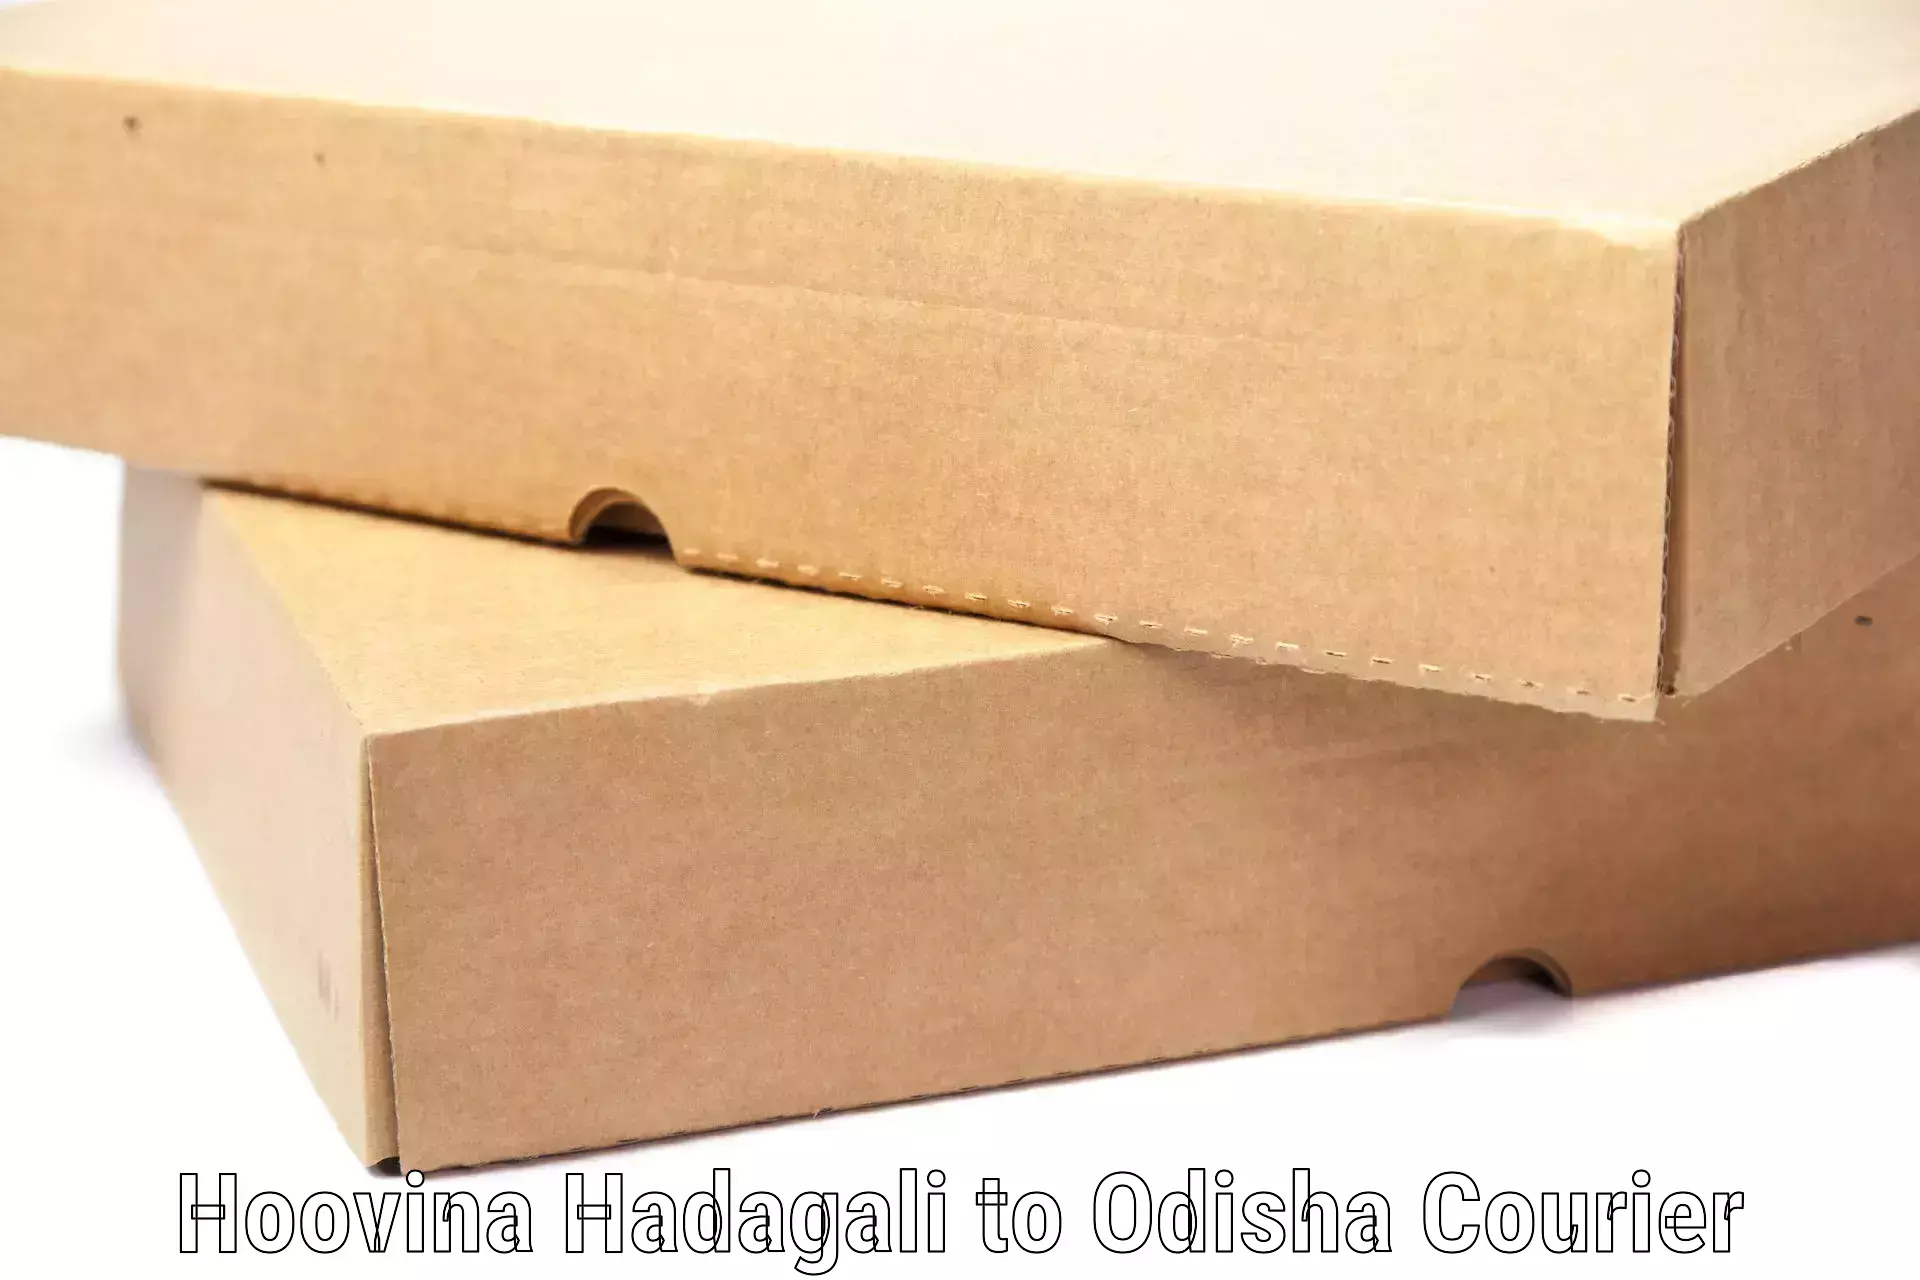 Scheduled baggage courier Hoovina Hadagali to Odisha